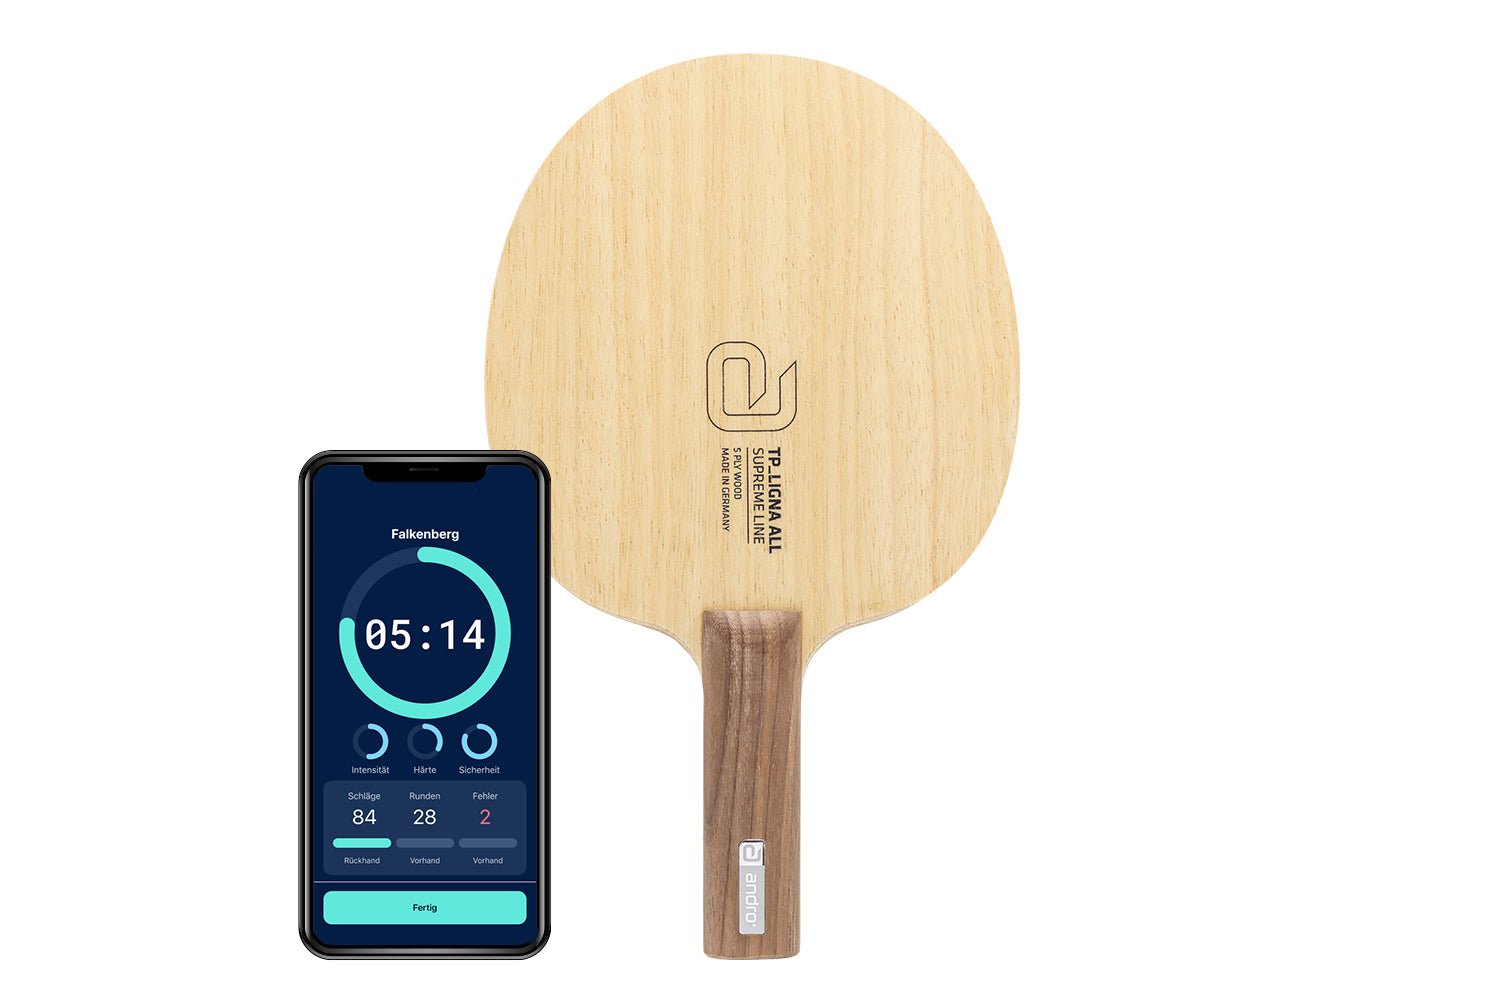 andro TP Ligna ALL Tischtennisschläger mit geradem Griff und Smartphone zeigt Daten des Schlägers vor weißem Hintergrund